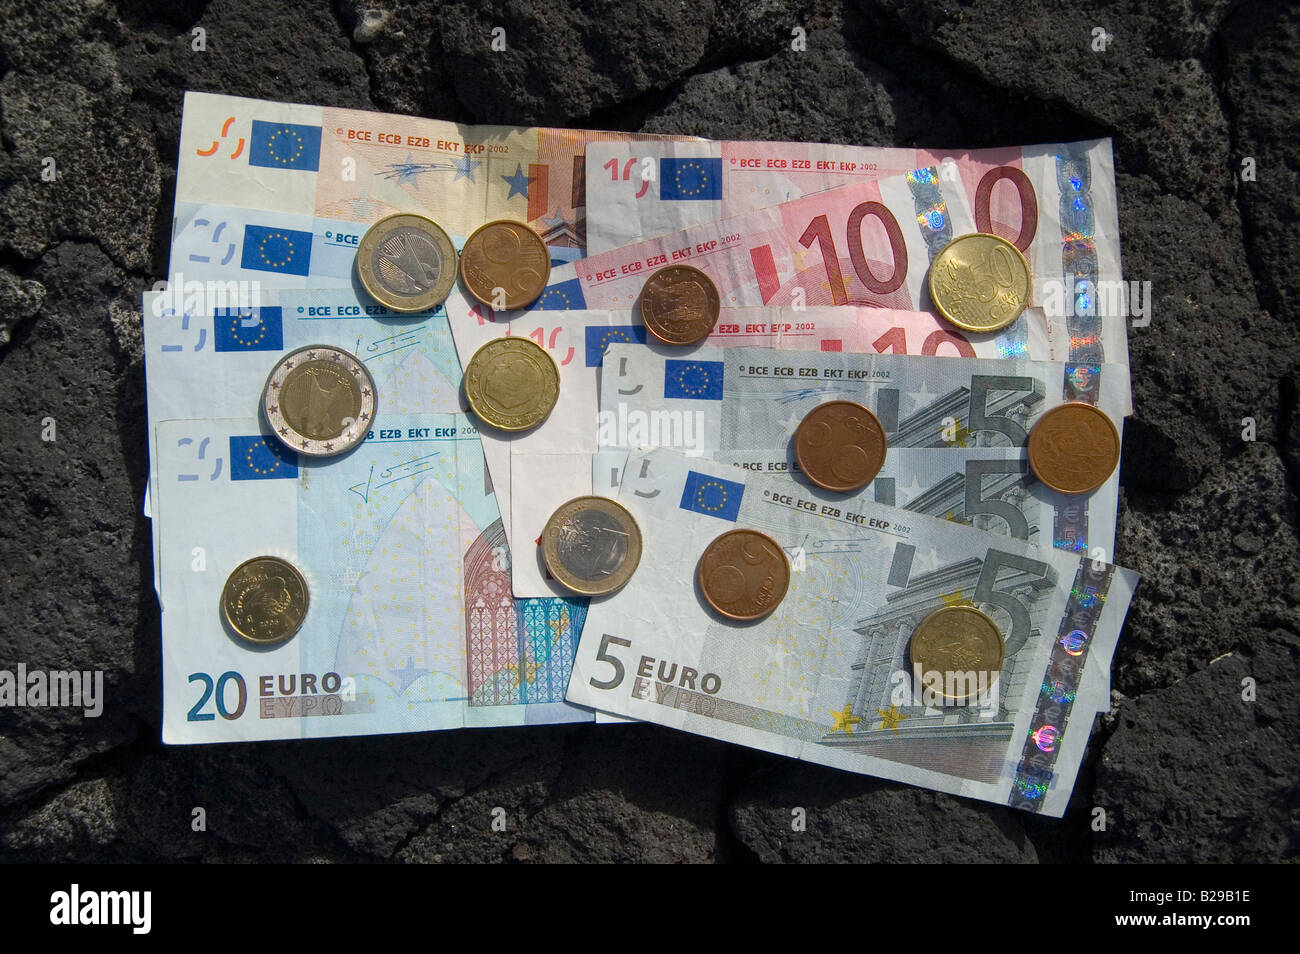 Le banconote e le monete in euro Data 12 12 2007 Ref ZB583 112784 0013 credito obbligatoria World Pictures Photoshot Foto Stock